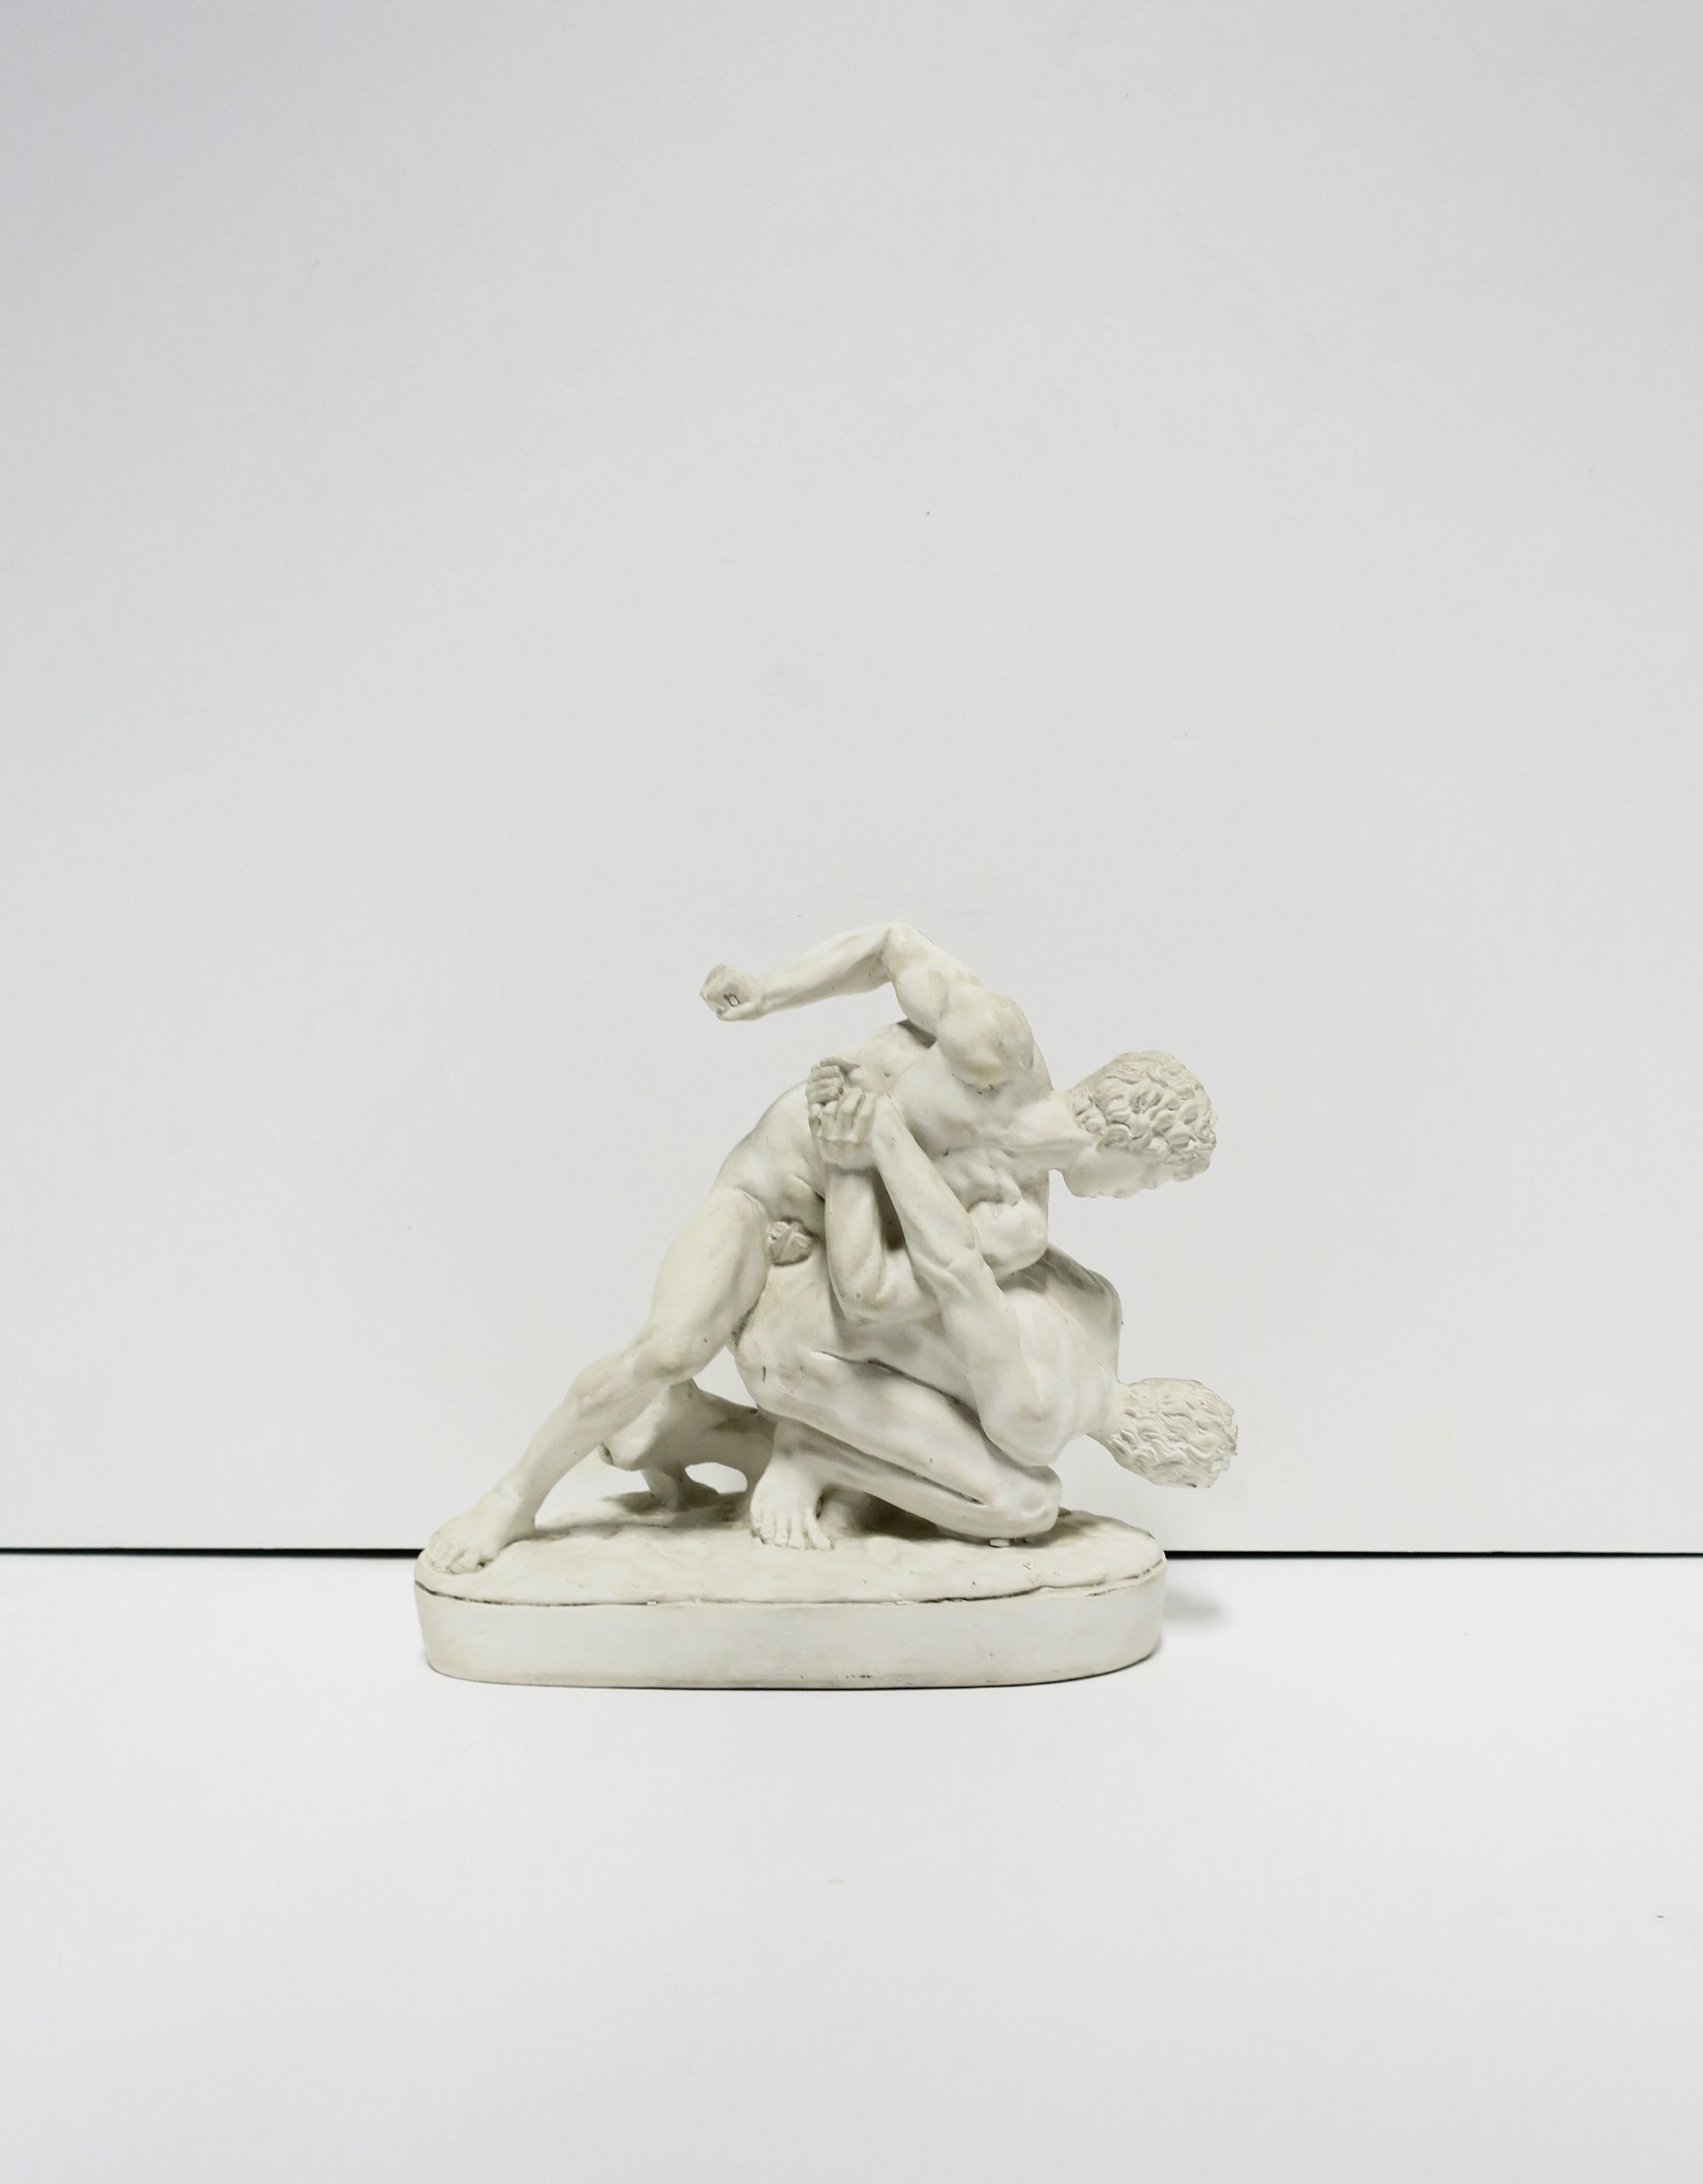 Greco Roman Greco-Roman White Plaster Male Figurative Sculpture